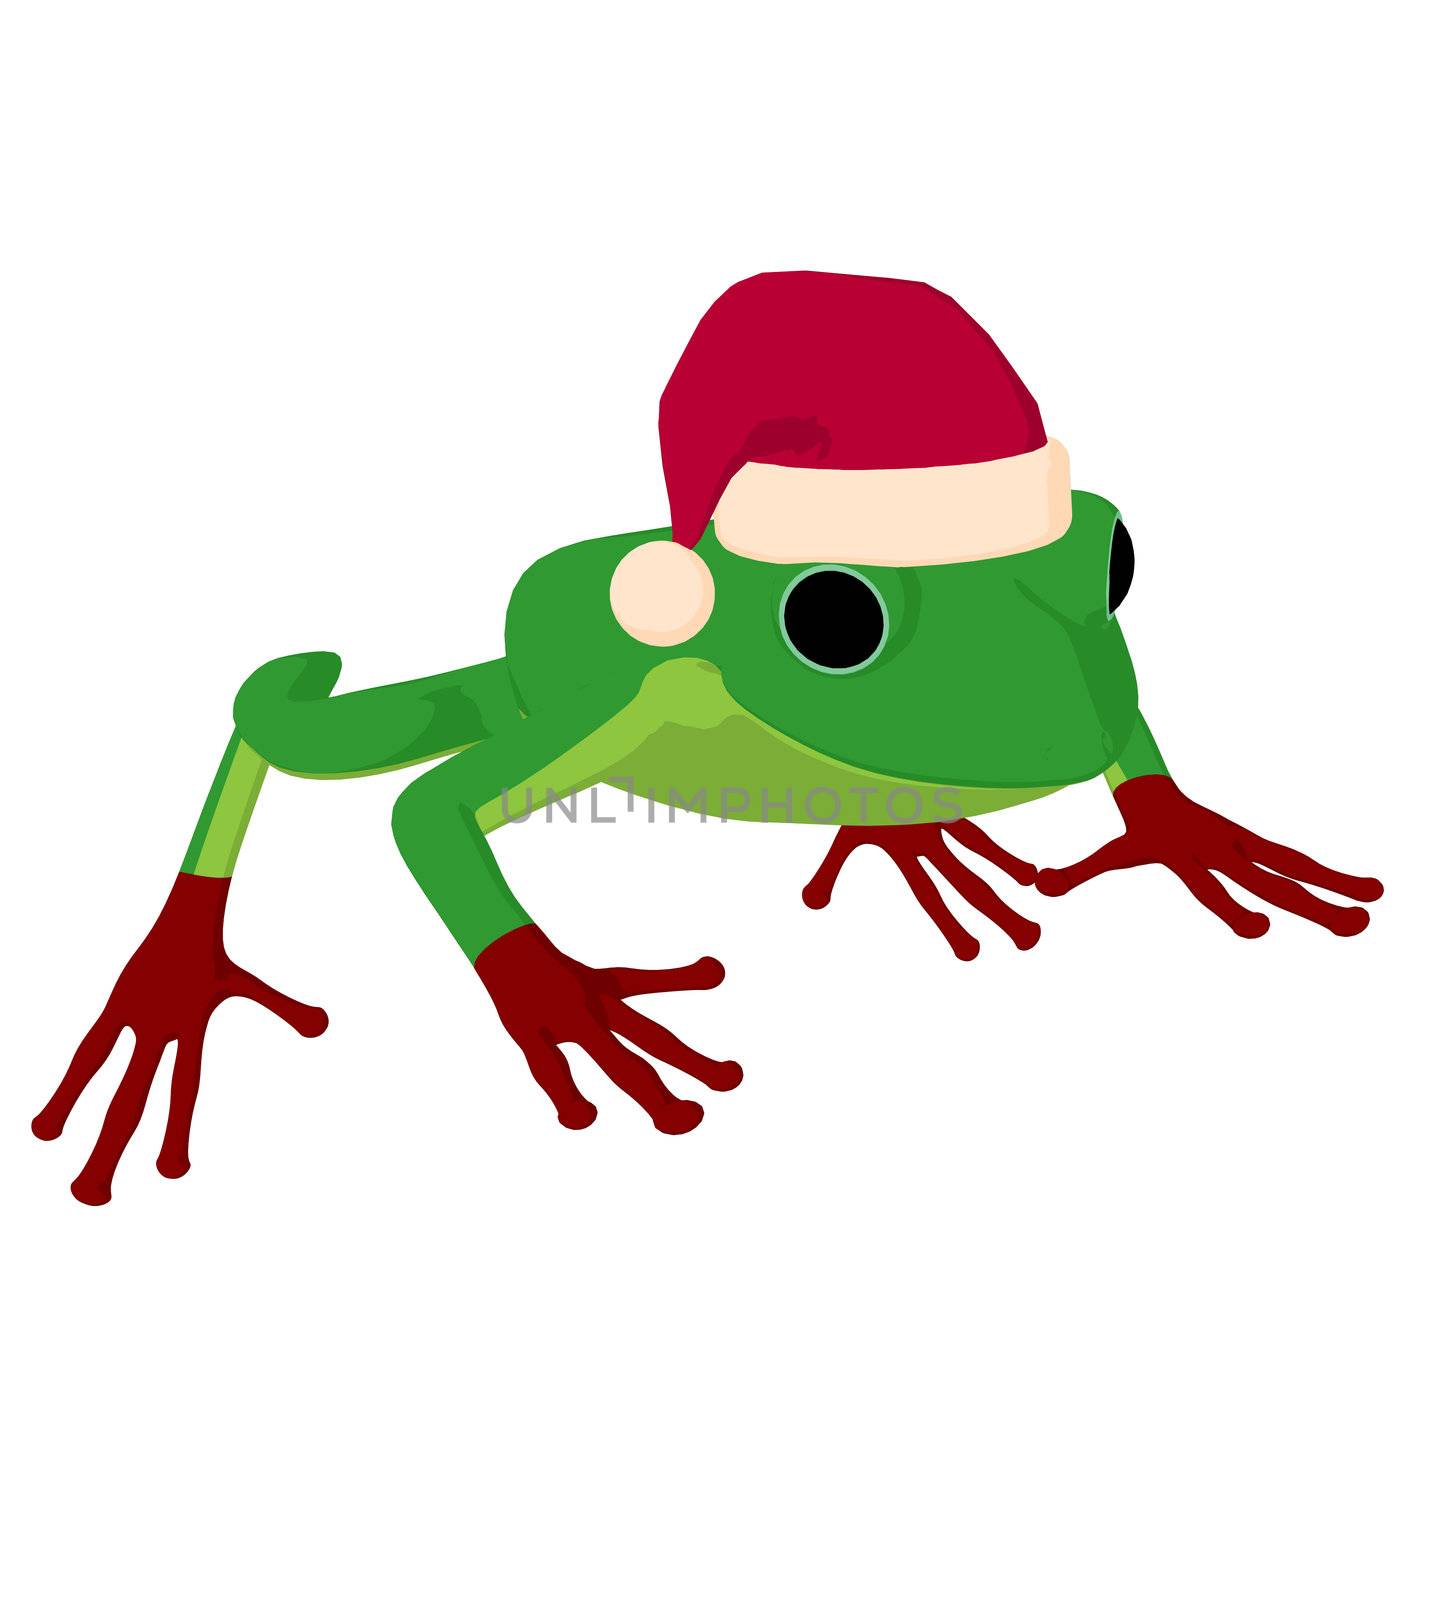 Frog Art Illustration by kathygold